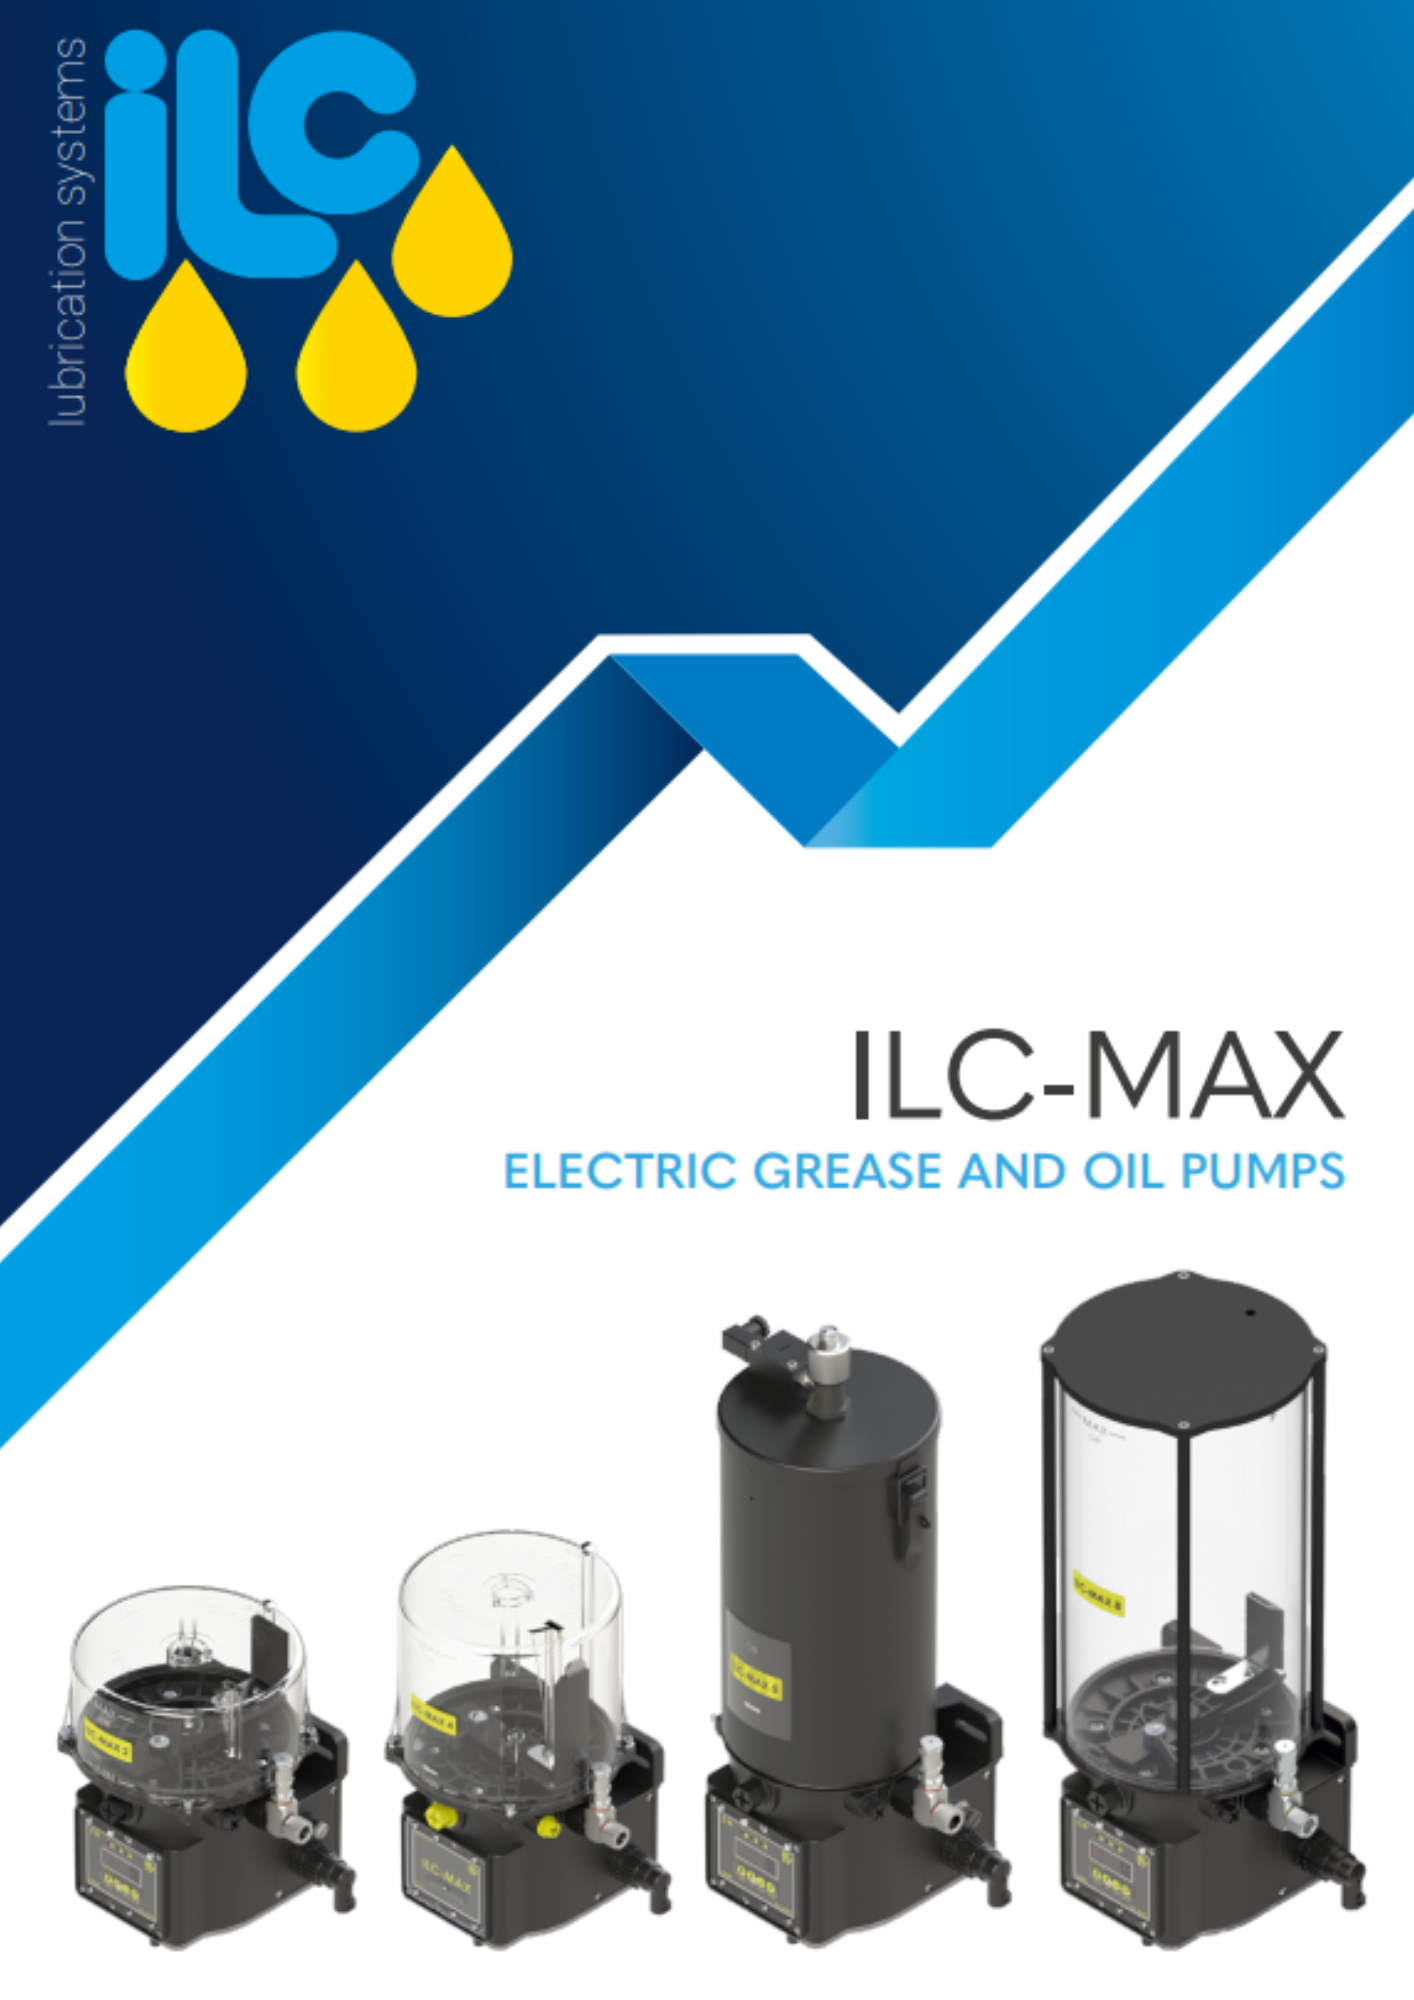 ILC: progressive lubrication (ILC-MAX)